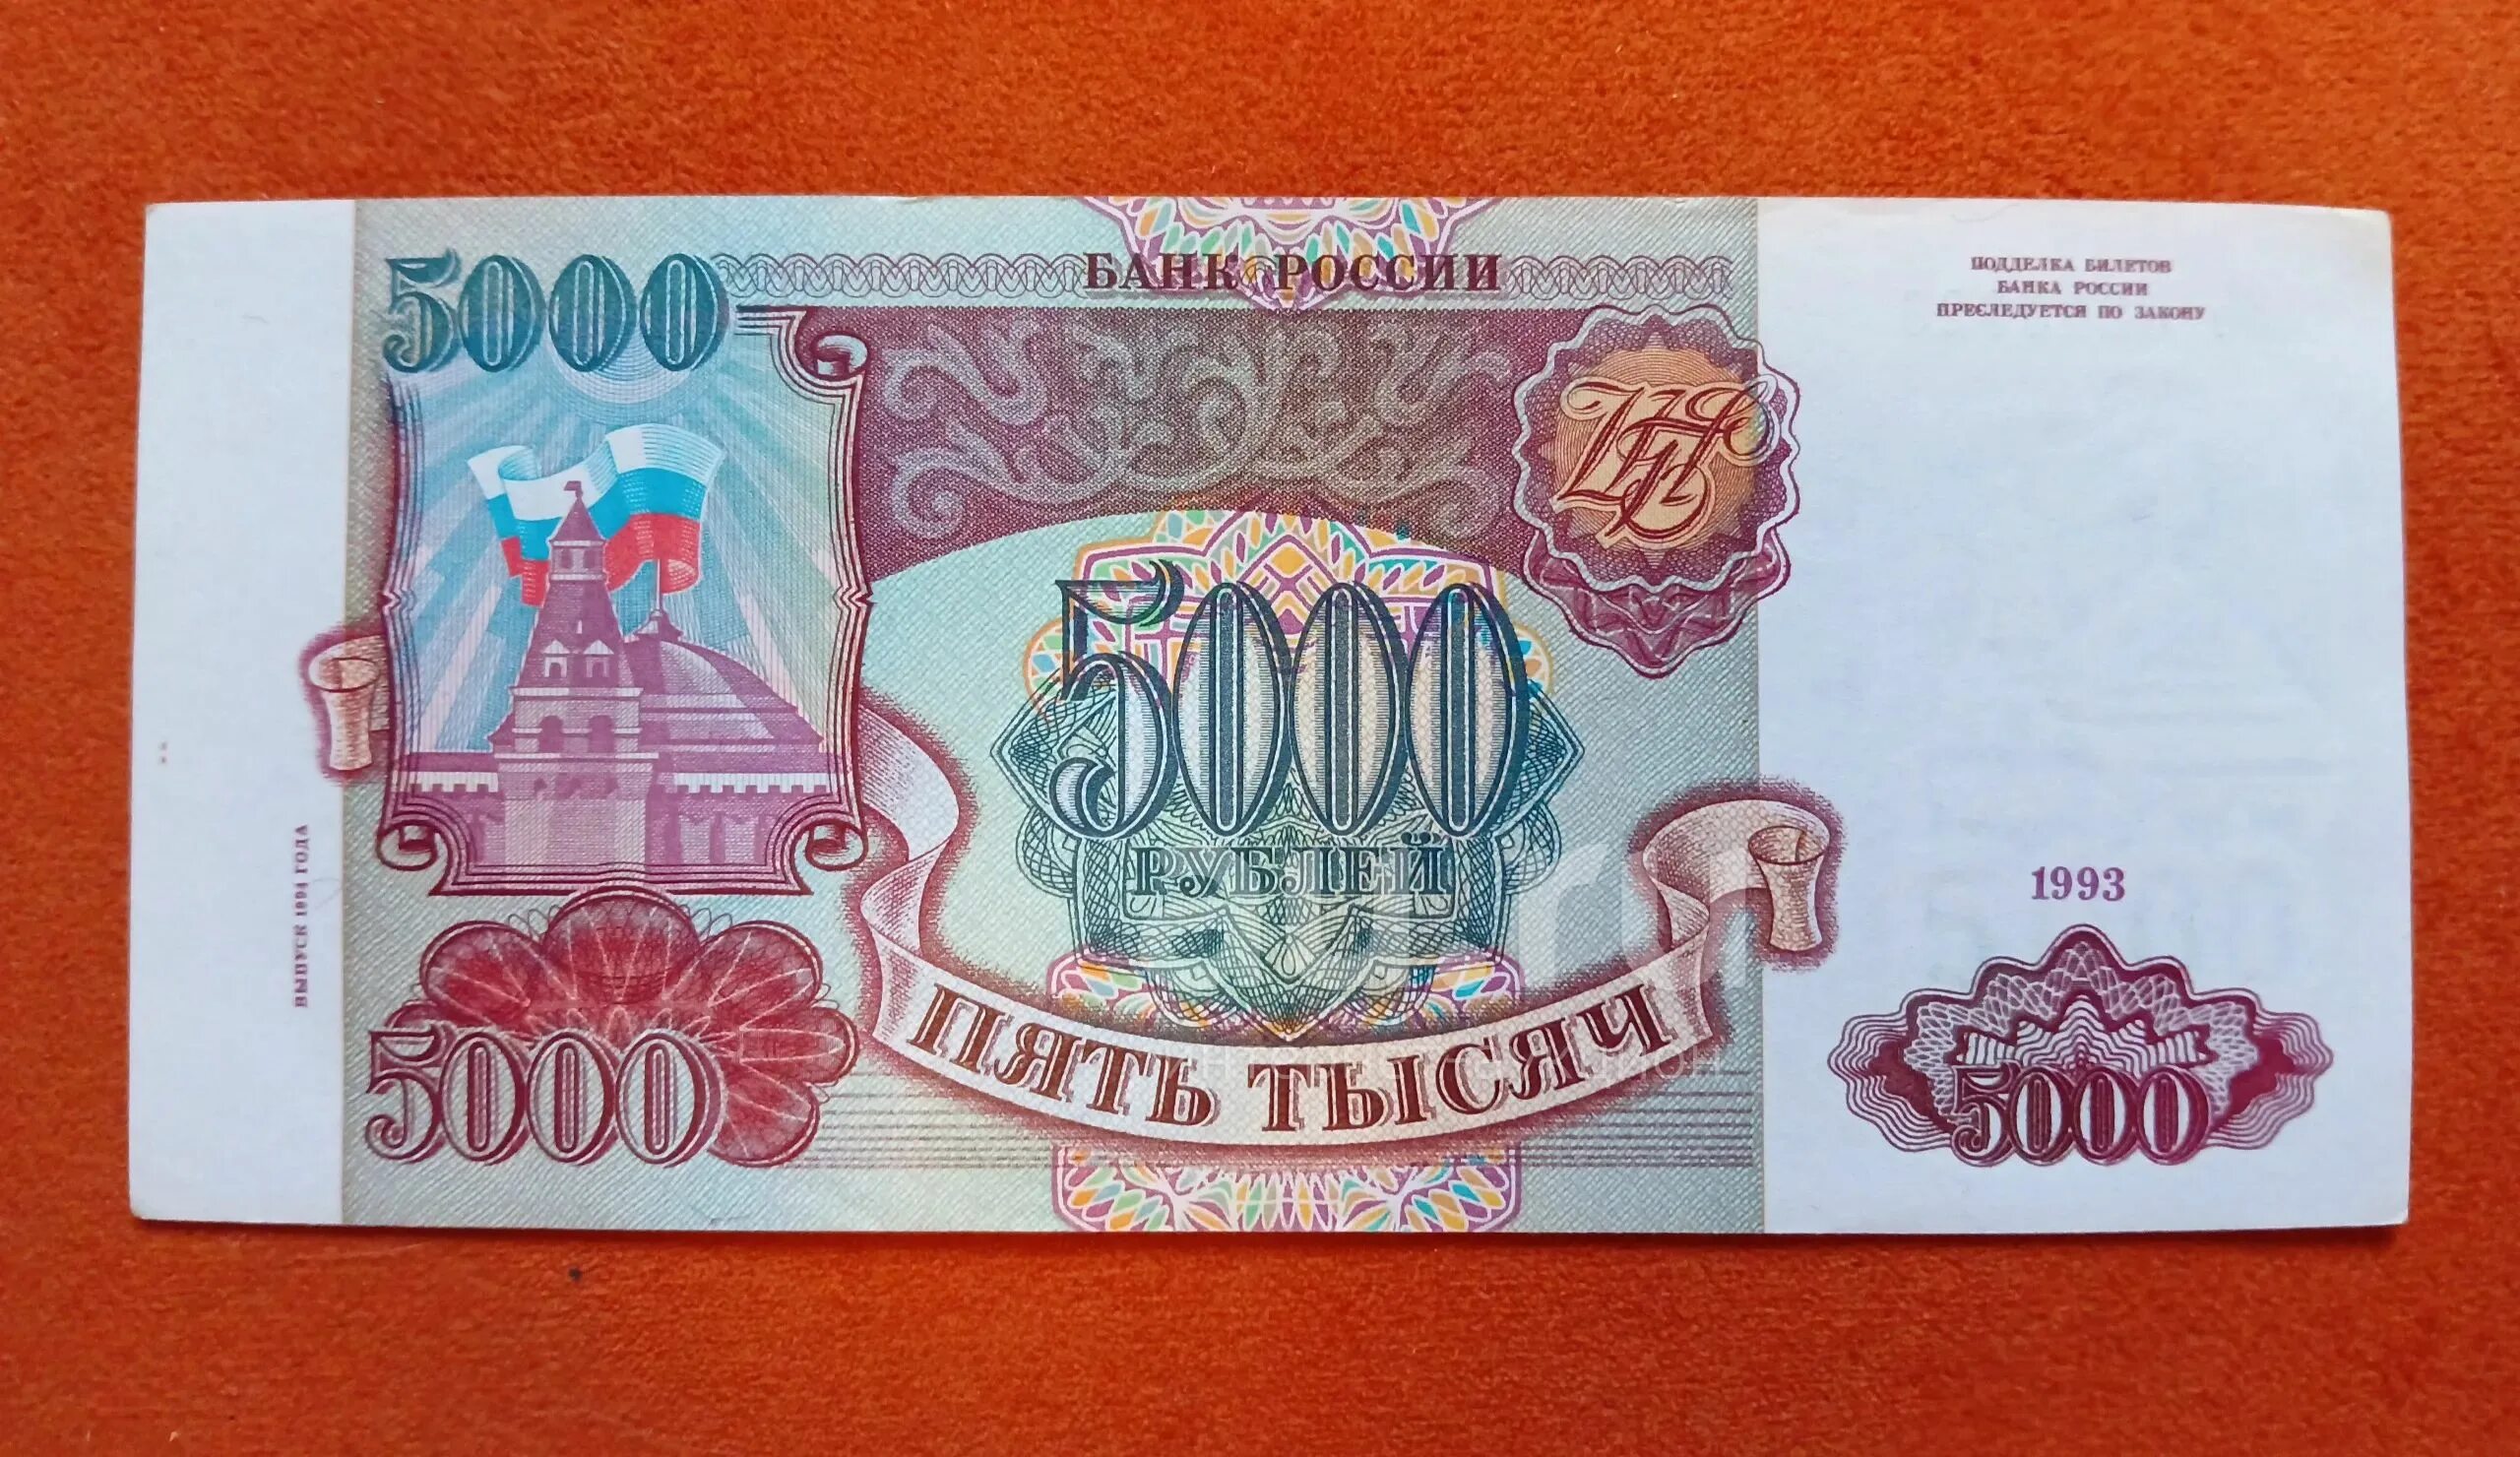 5000 Рублей 1993 года. Рубли 1993 года. Купюра 5000 1993 года. Билет банка России 5000.